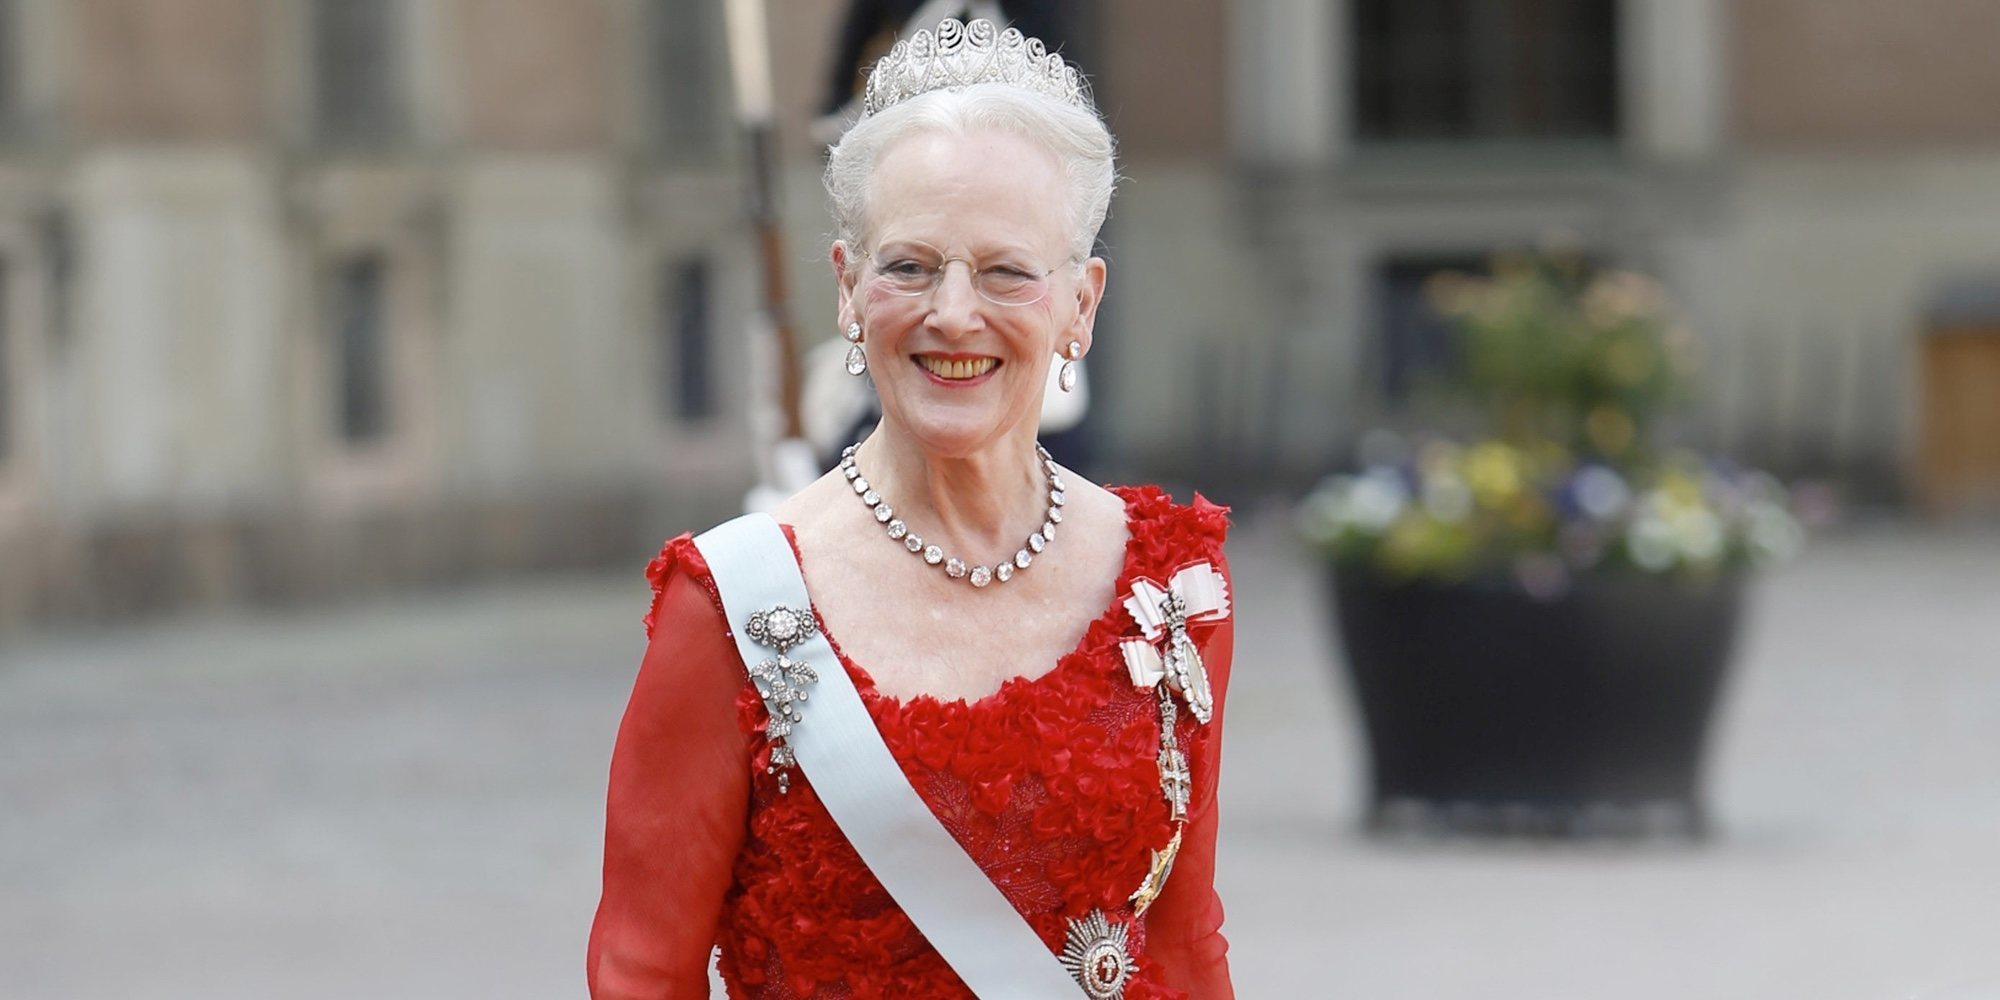 Las celebraciones por el 80 cumpleaños de Margarita de Dinamarca: espectáculos y reunión de royals extranjeros